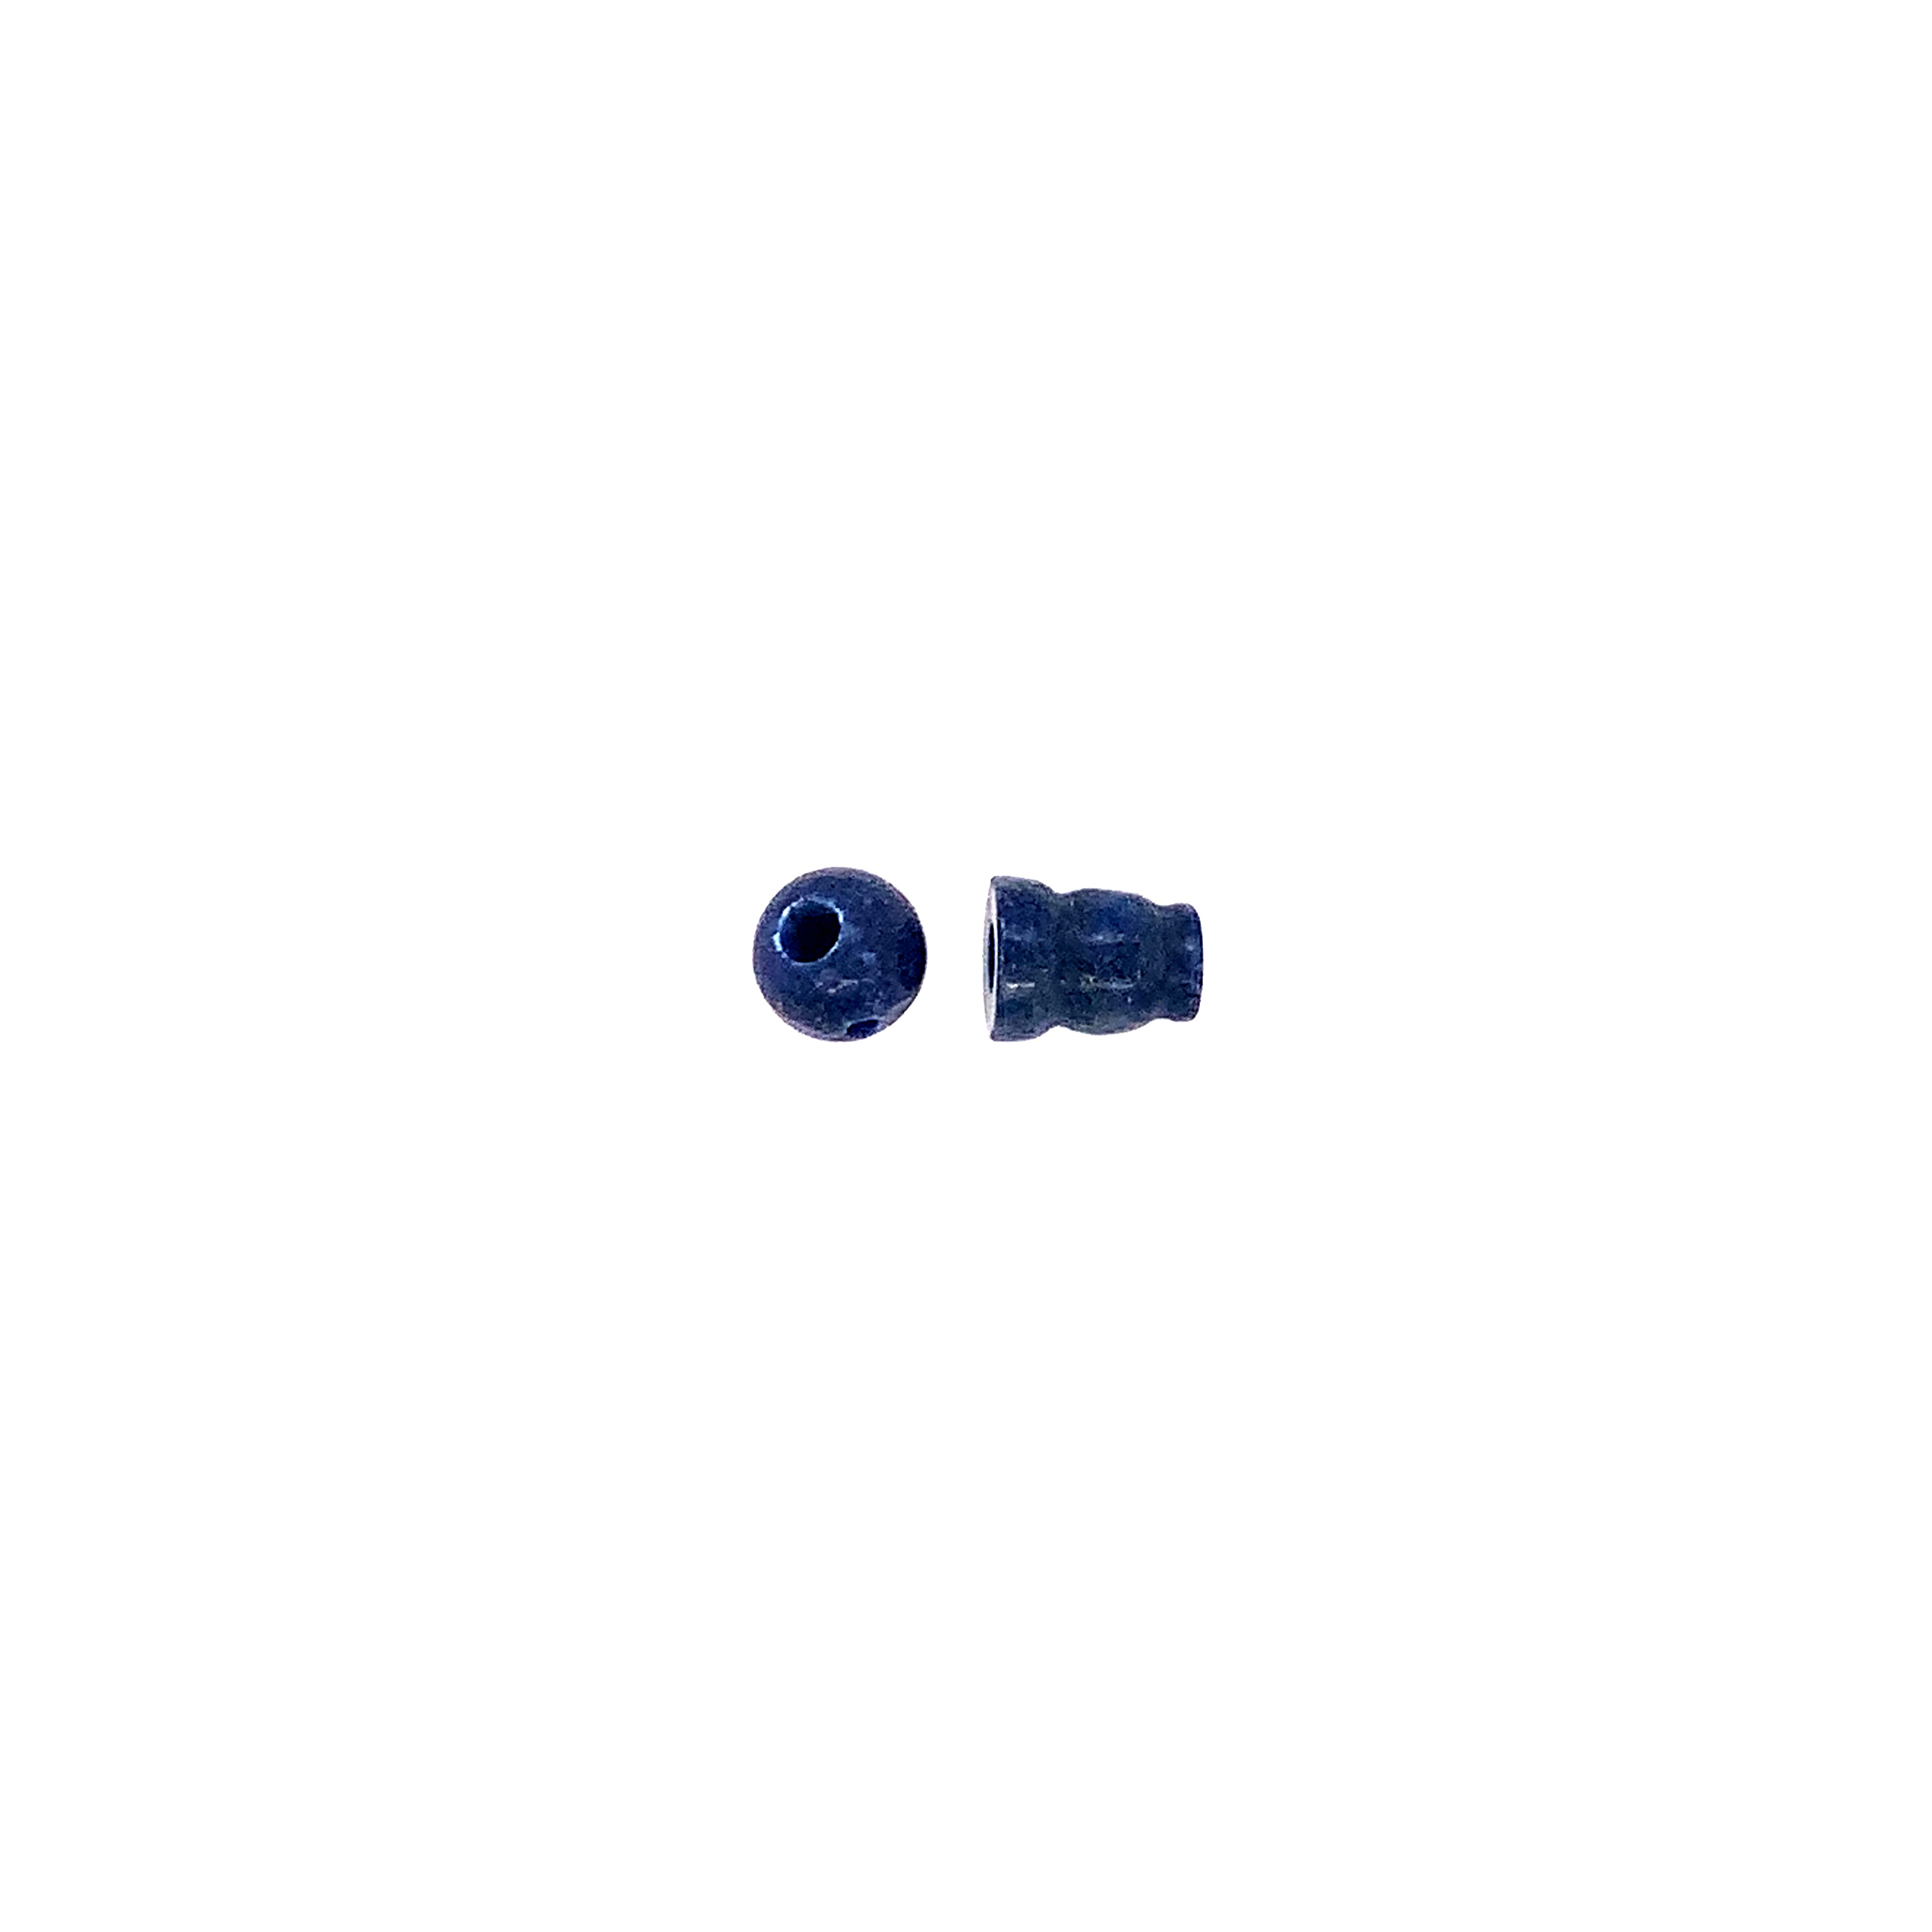 6mm Lapis Lazuli Guru Beads